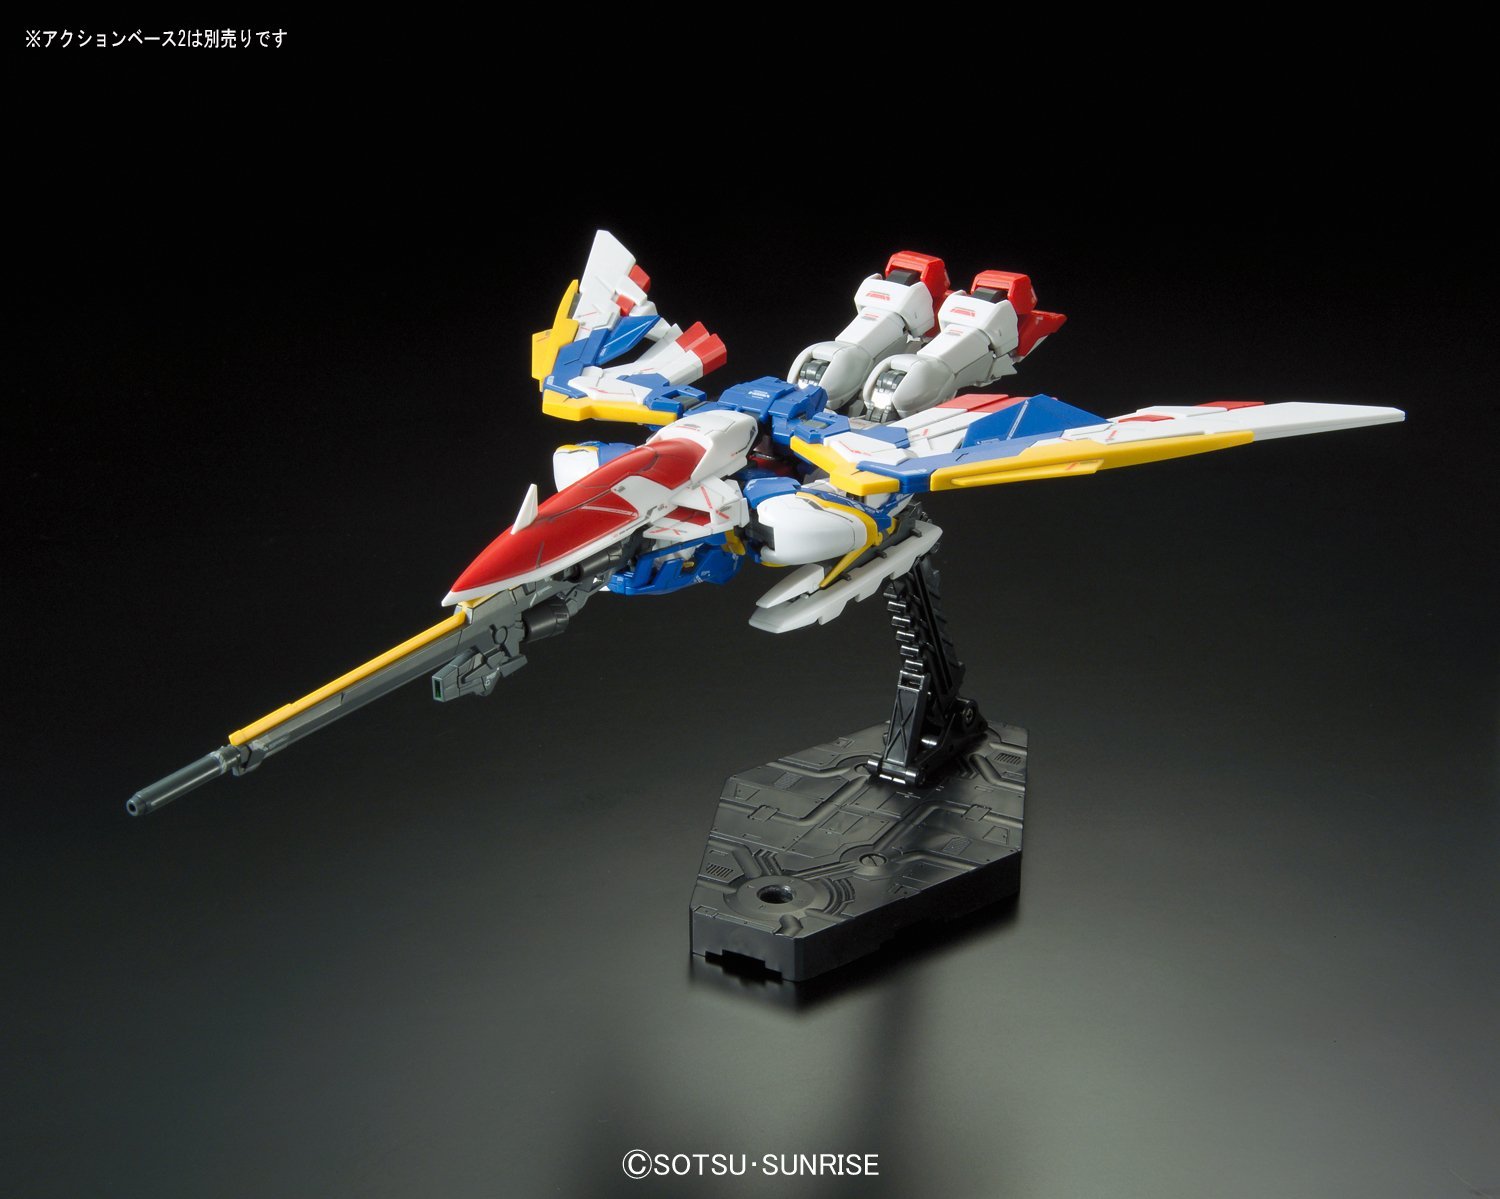 RG XXXG-01W Wing Gundam EW